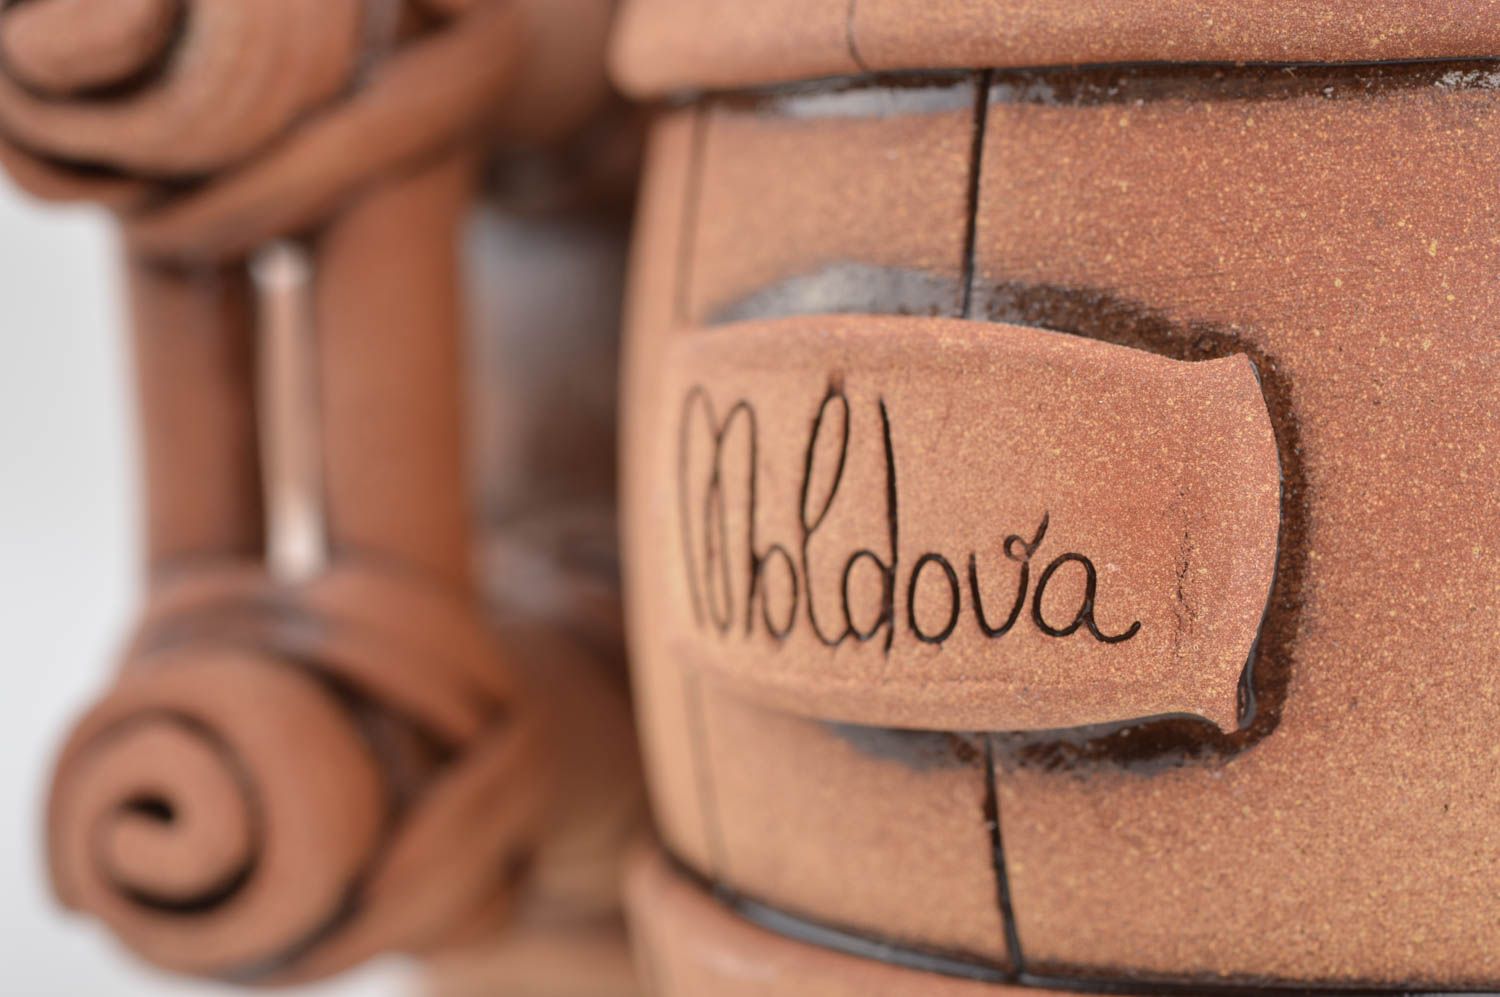 Handmade designer ceramic ethnic beer mug styled on barrel glazed decorative photo 4